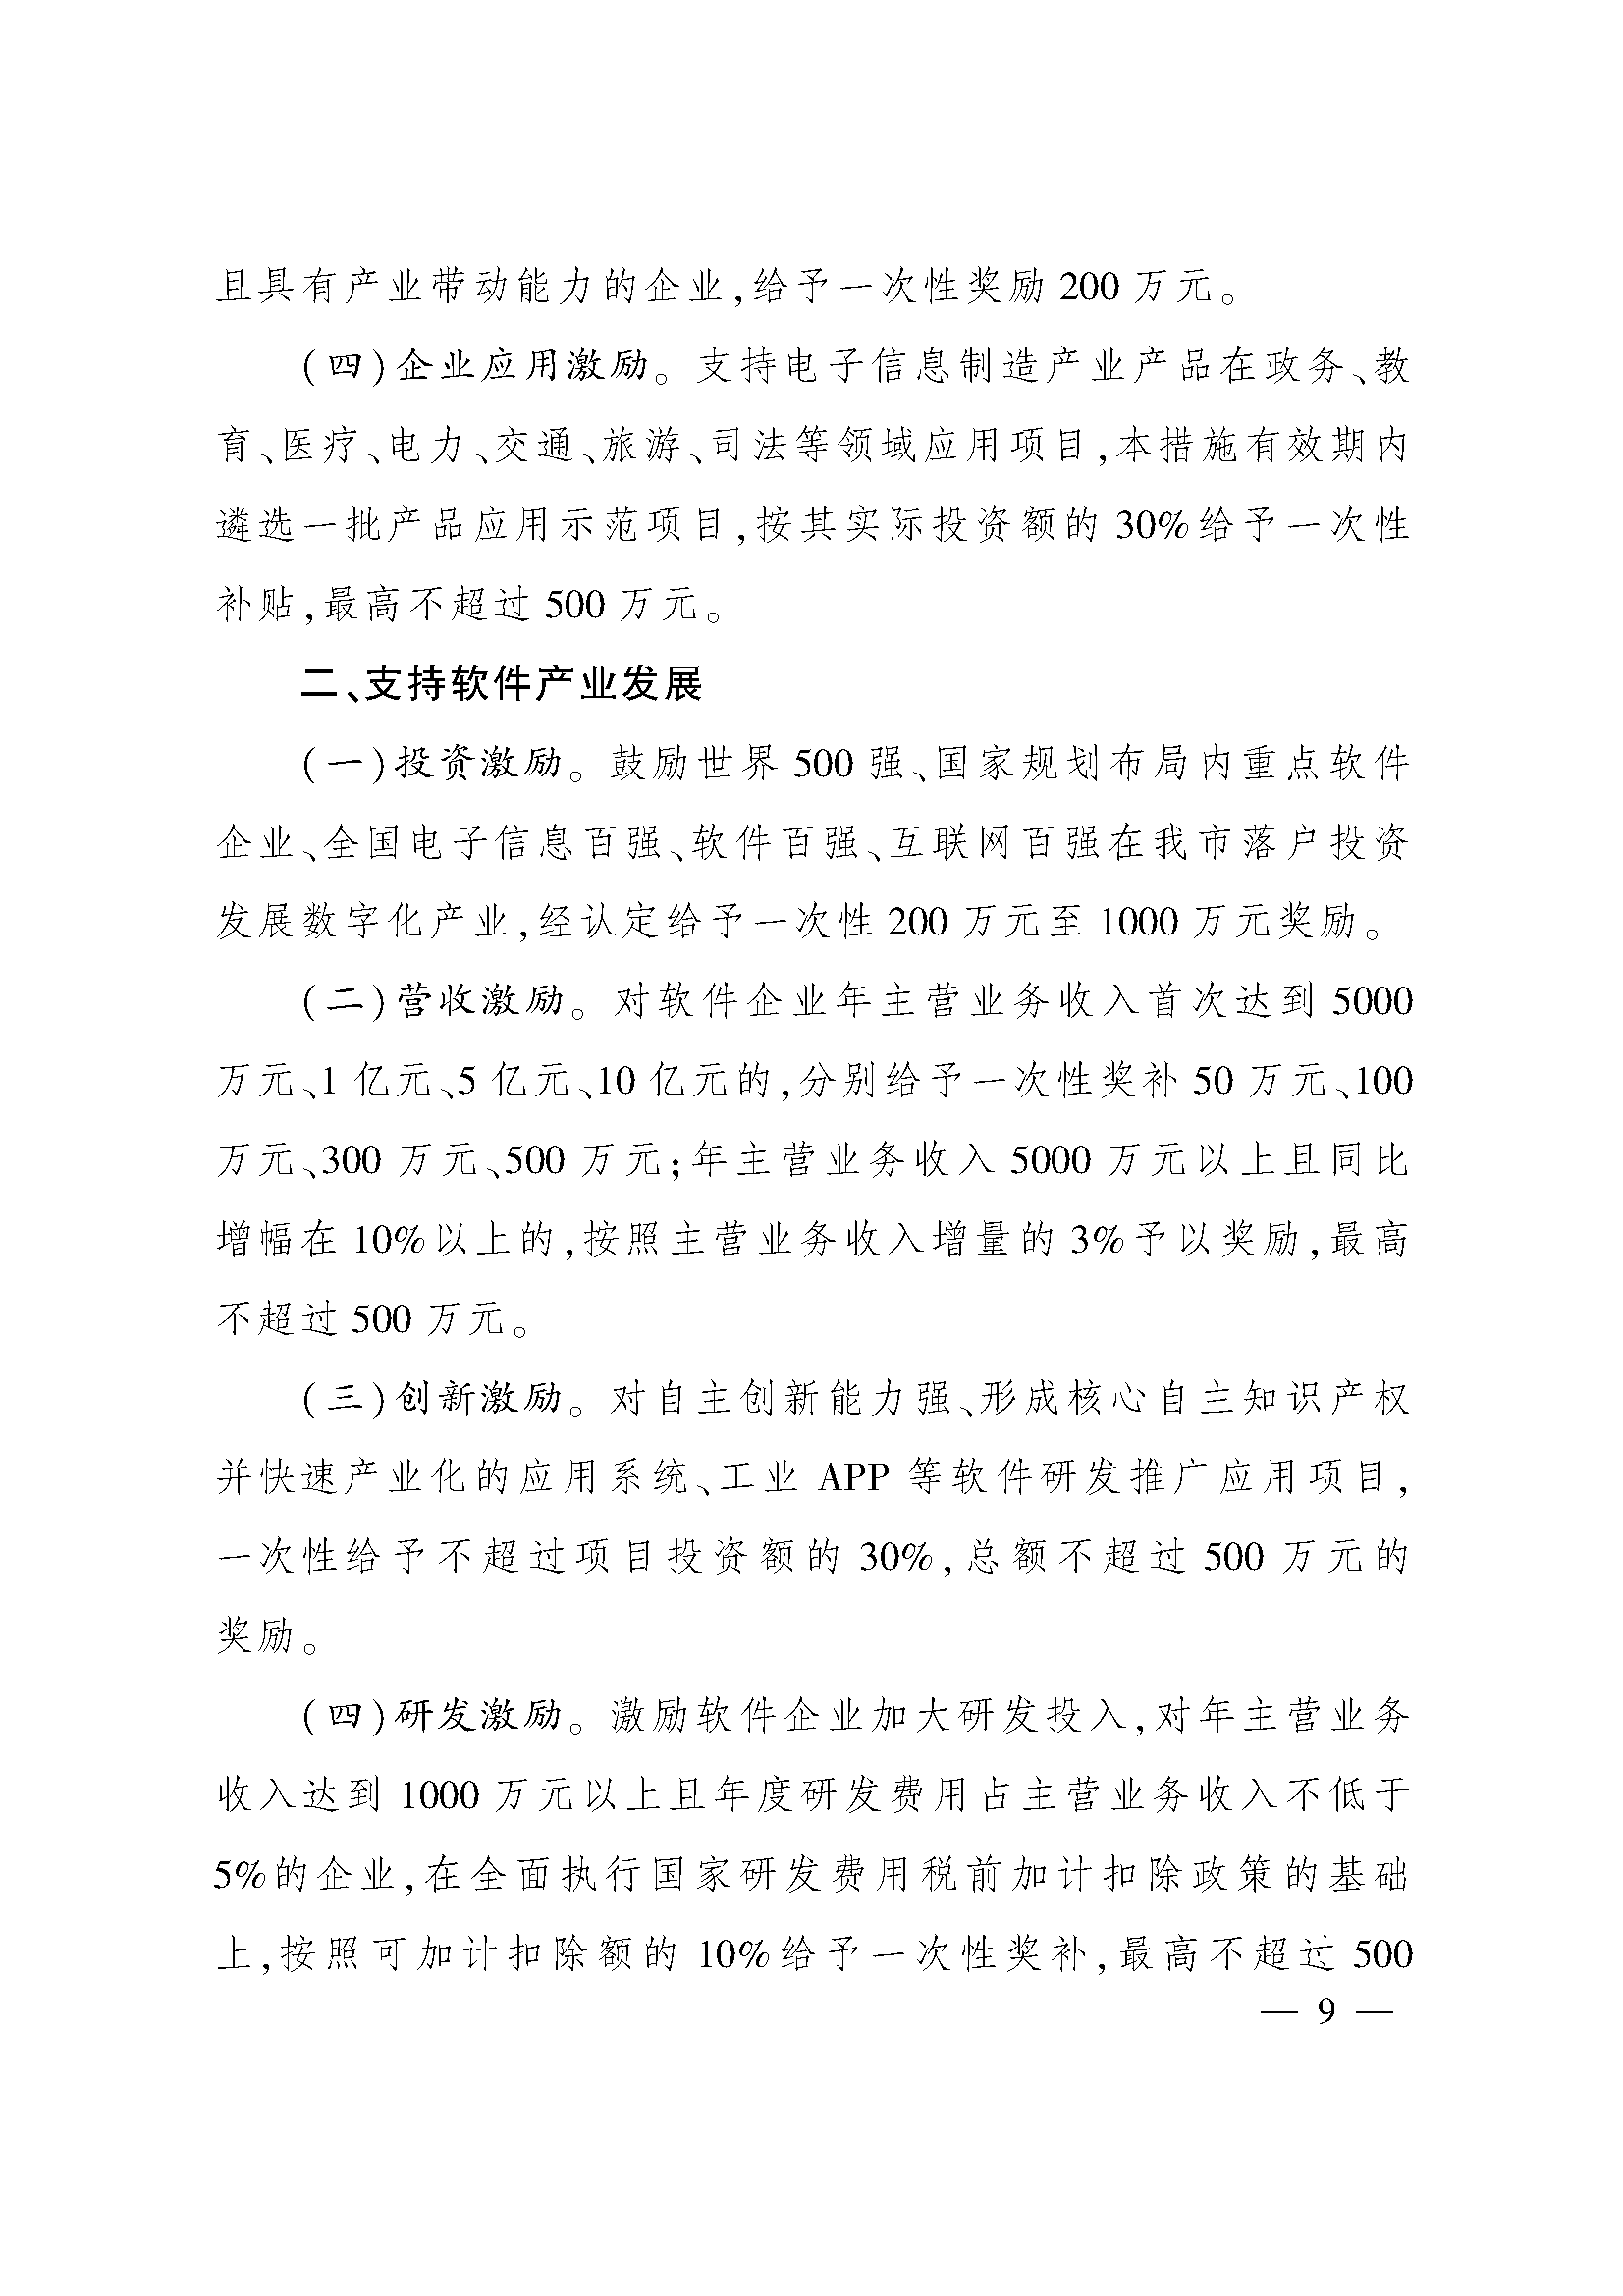 太原市人民政府办公室关于印发太原市招商引资若干措施的通知(图9)